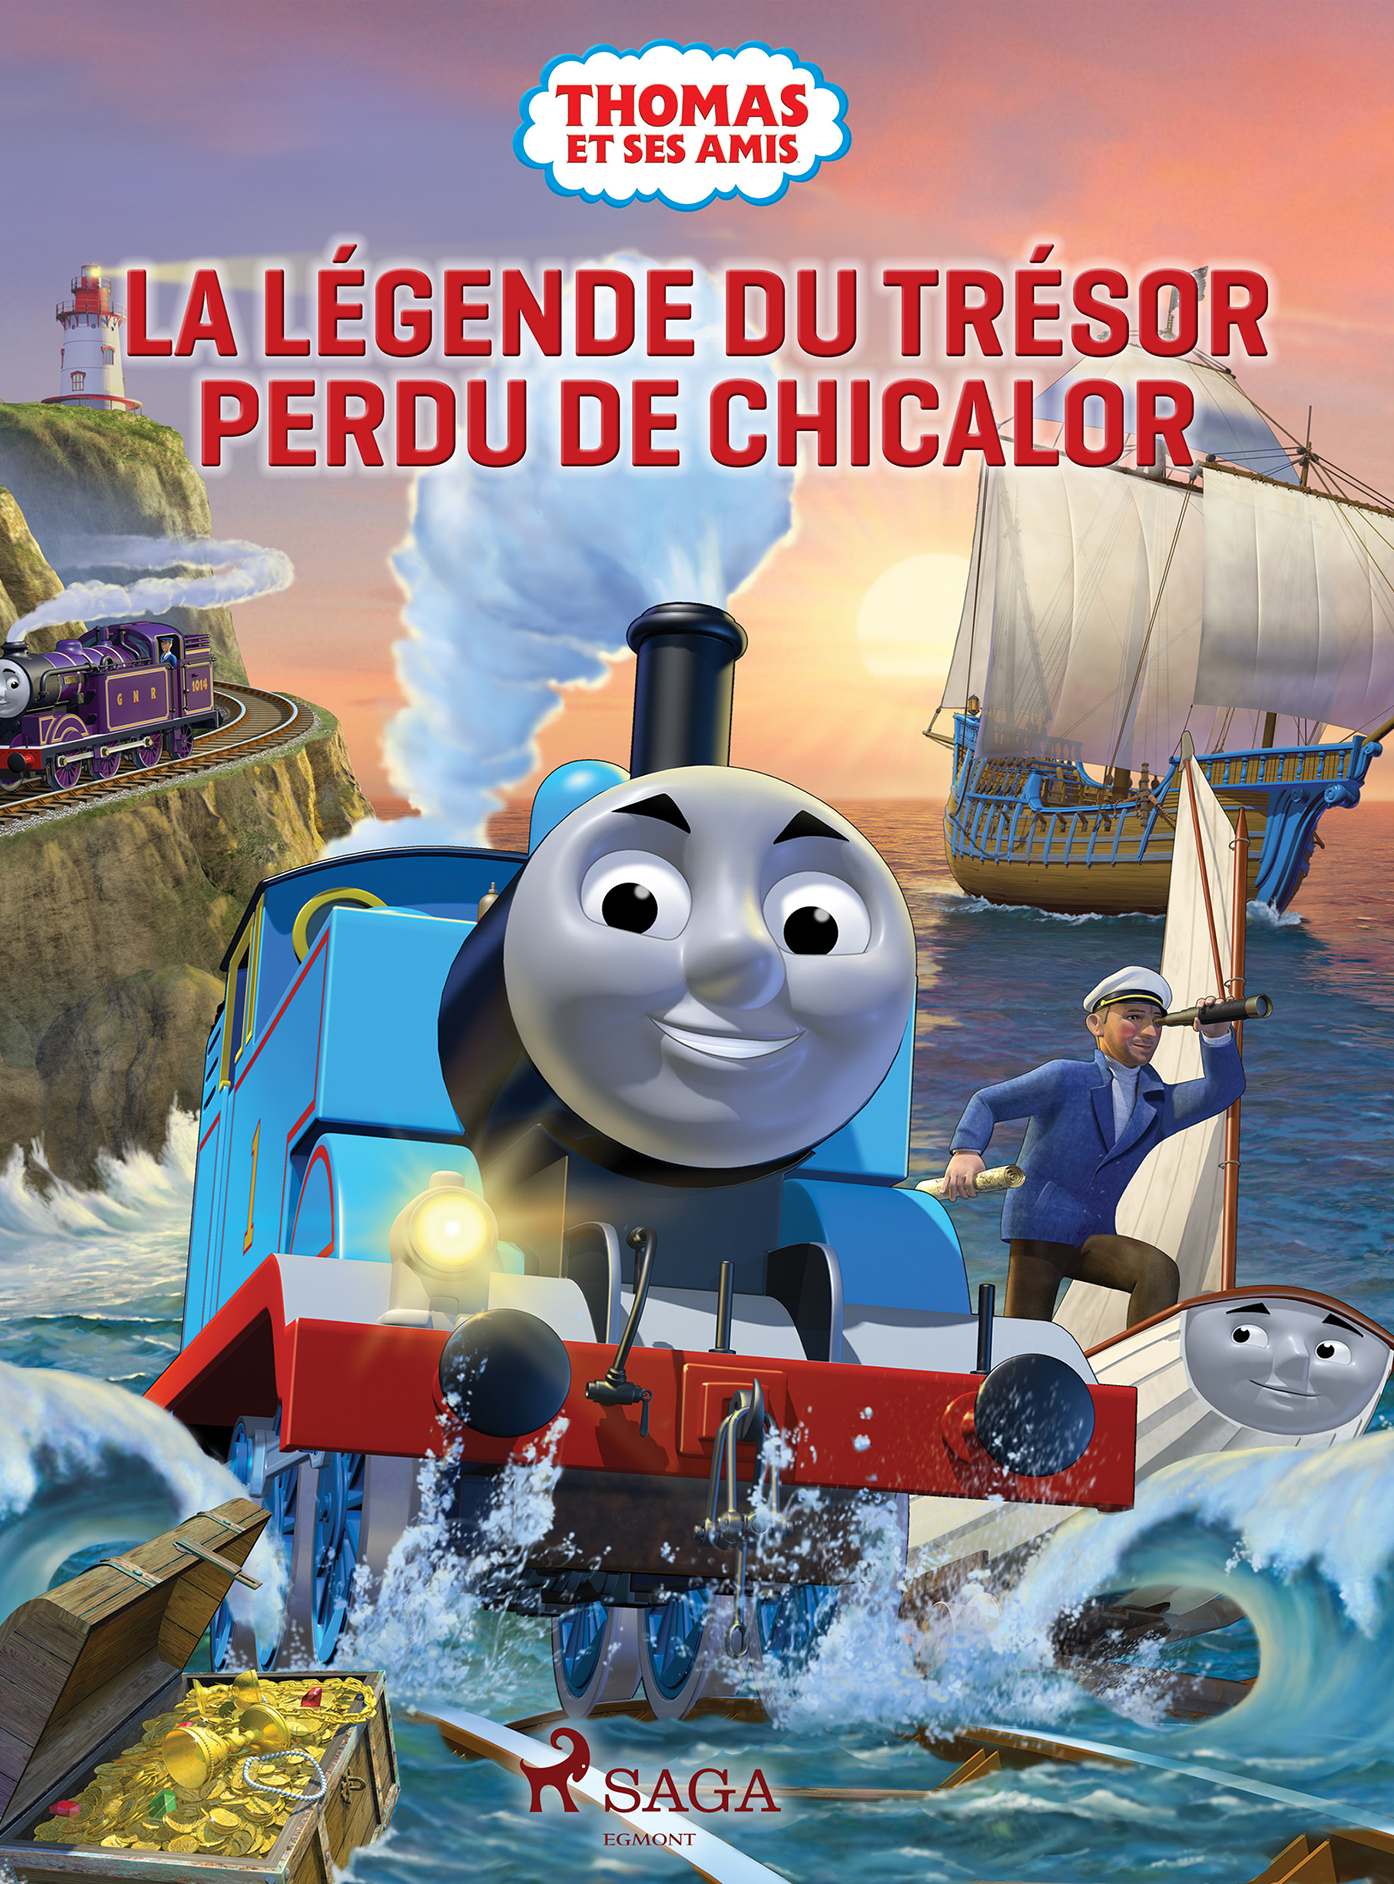 Thomas & ses amis - La légende du trésor perdu de Chicalor